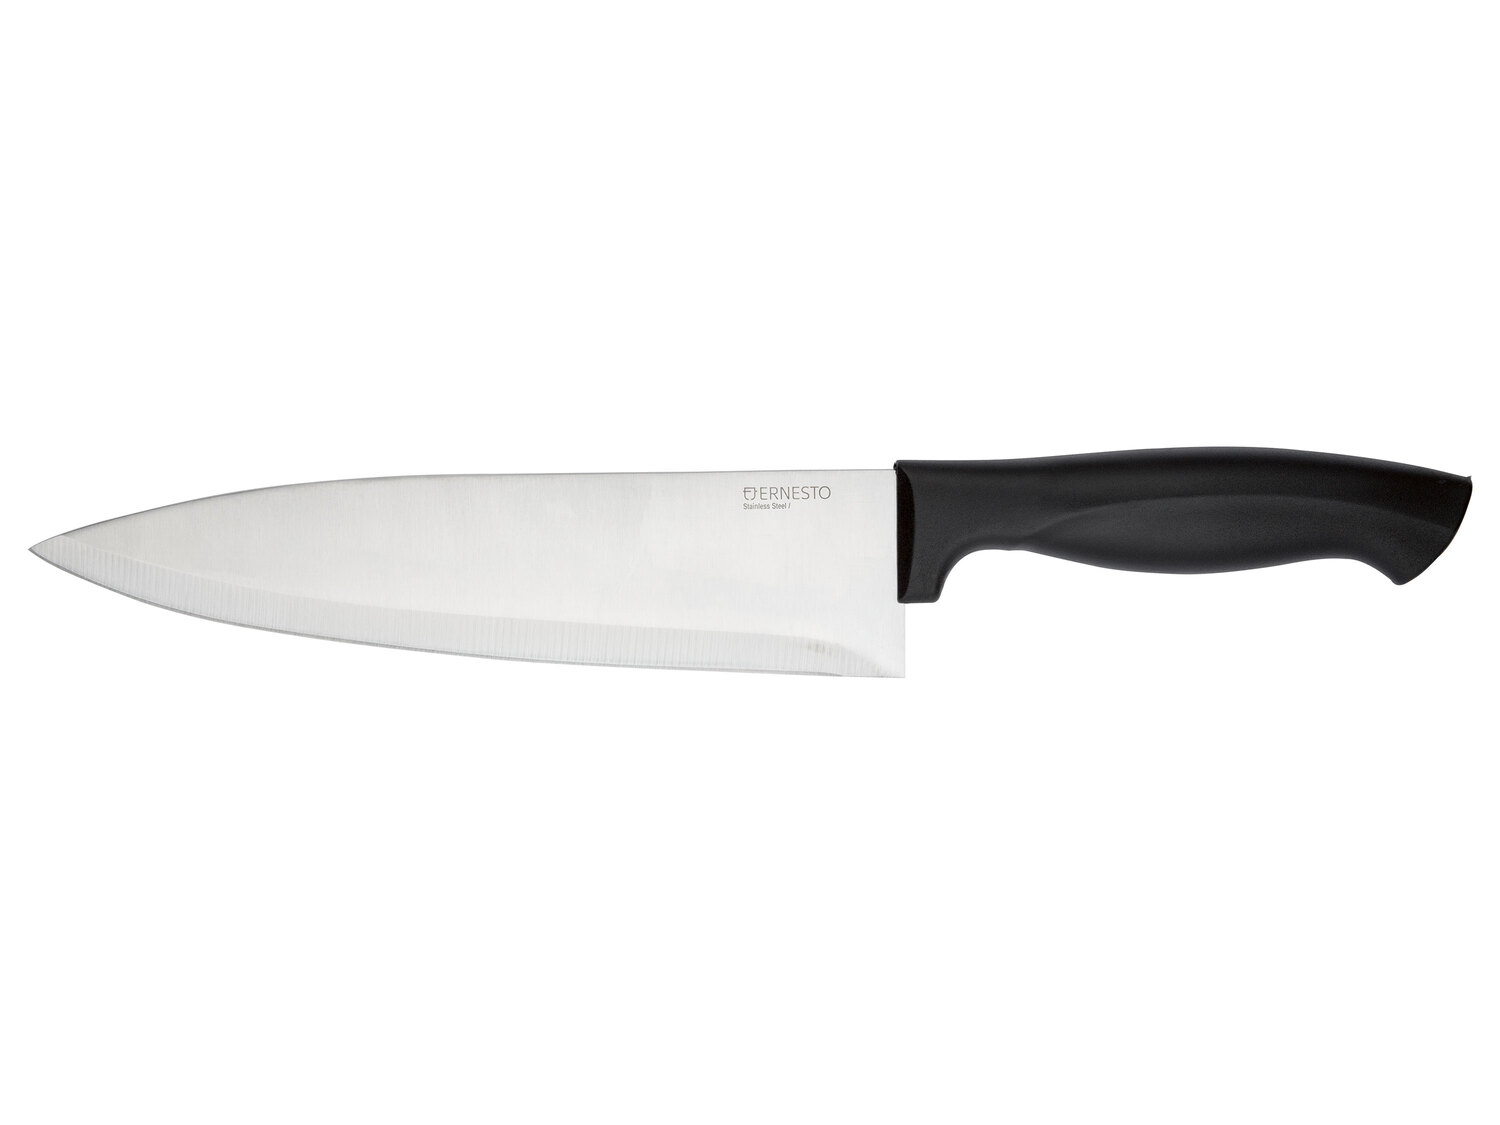 Couteau de cuisine , le prix 1.99 &#8364; 
- Au choix : Set de couteaux, set ...